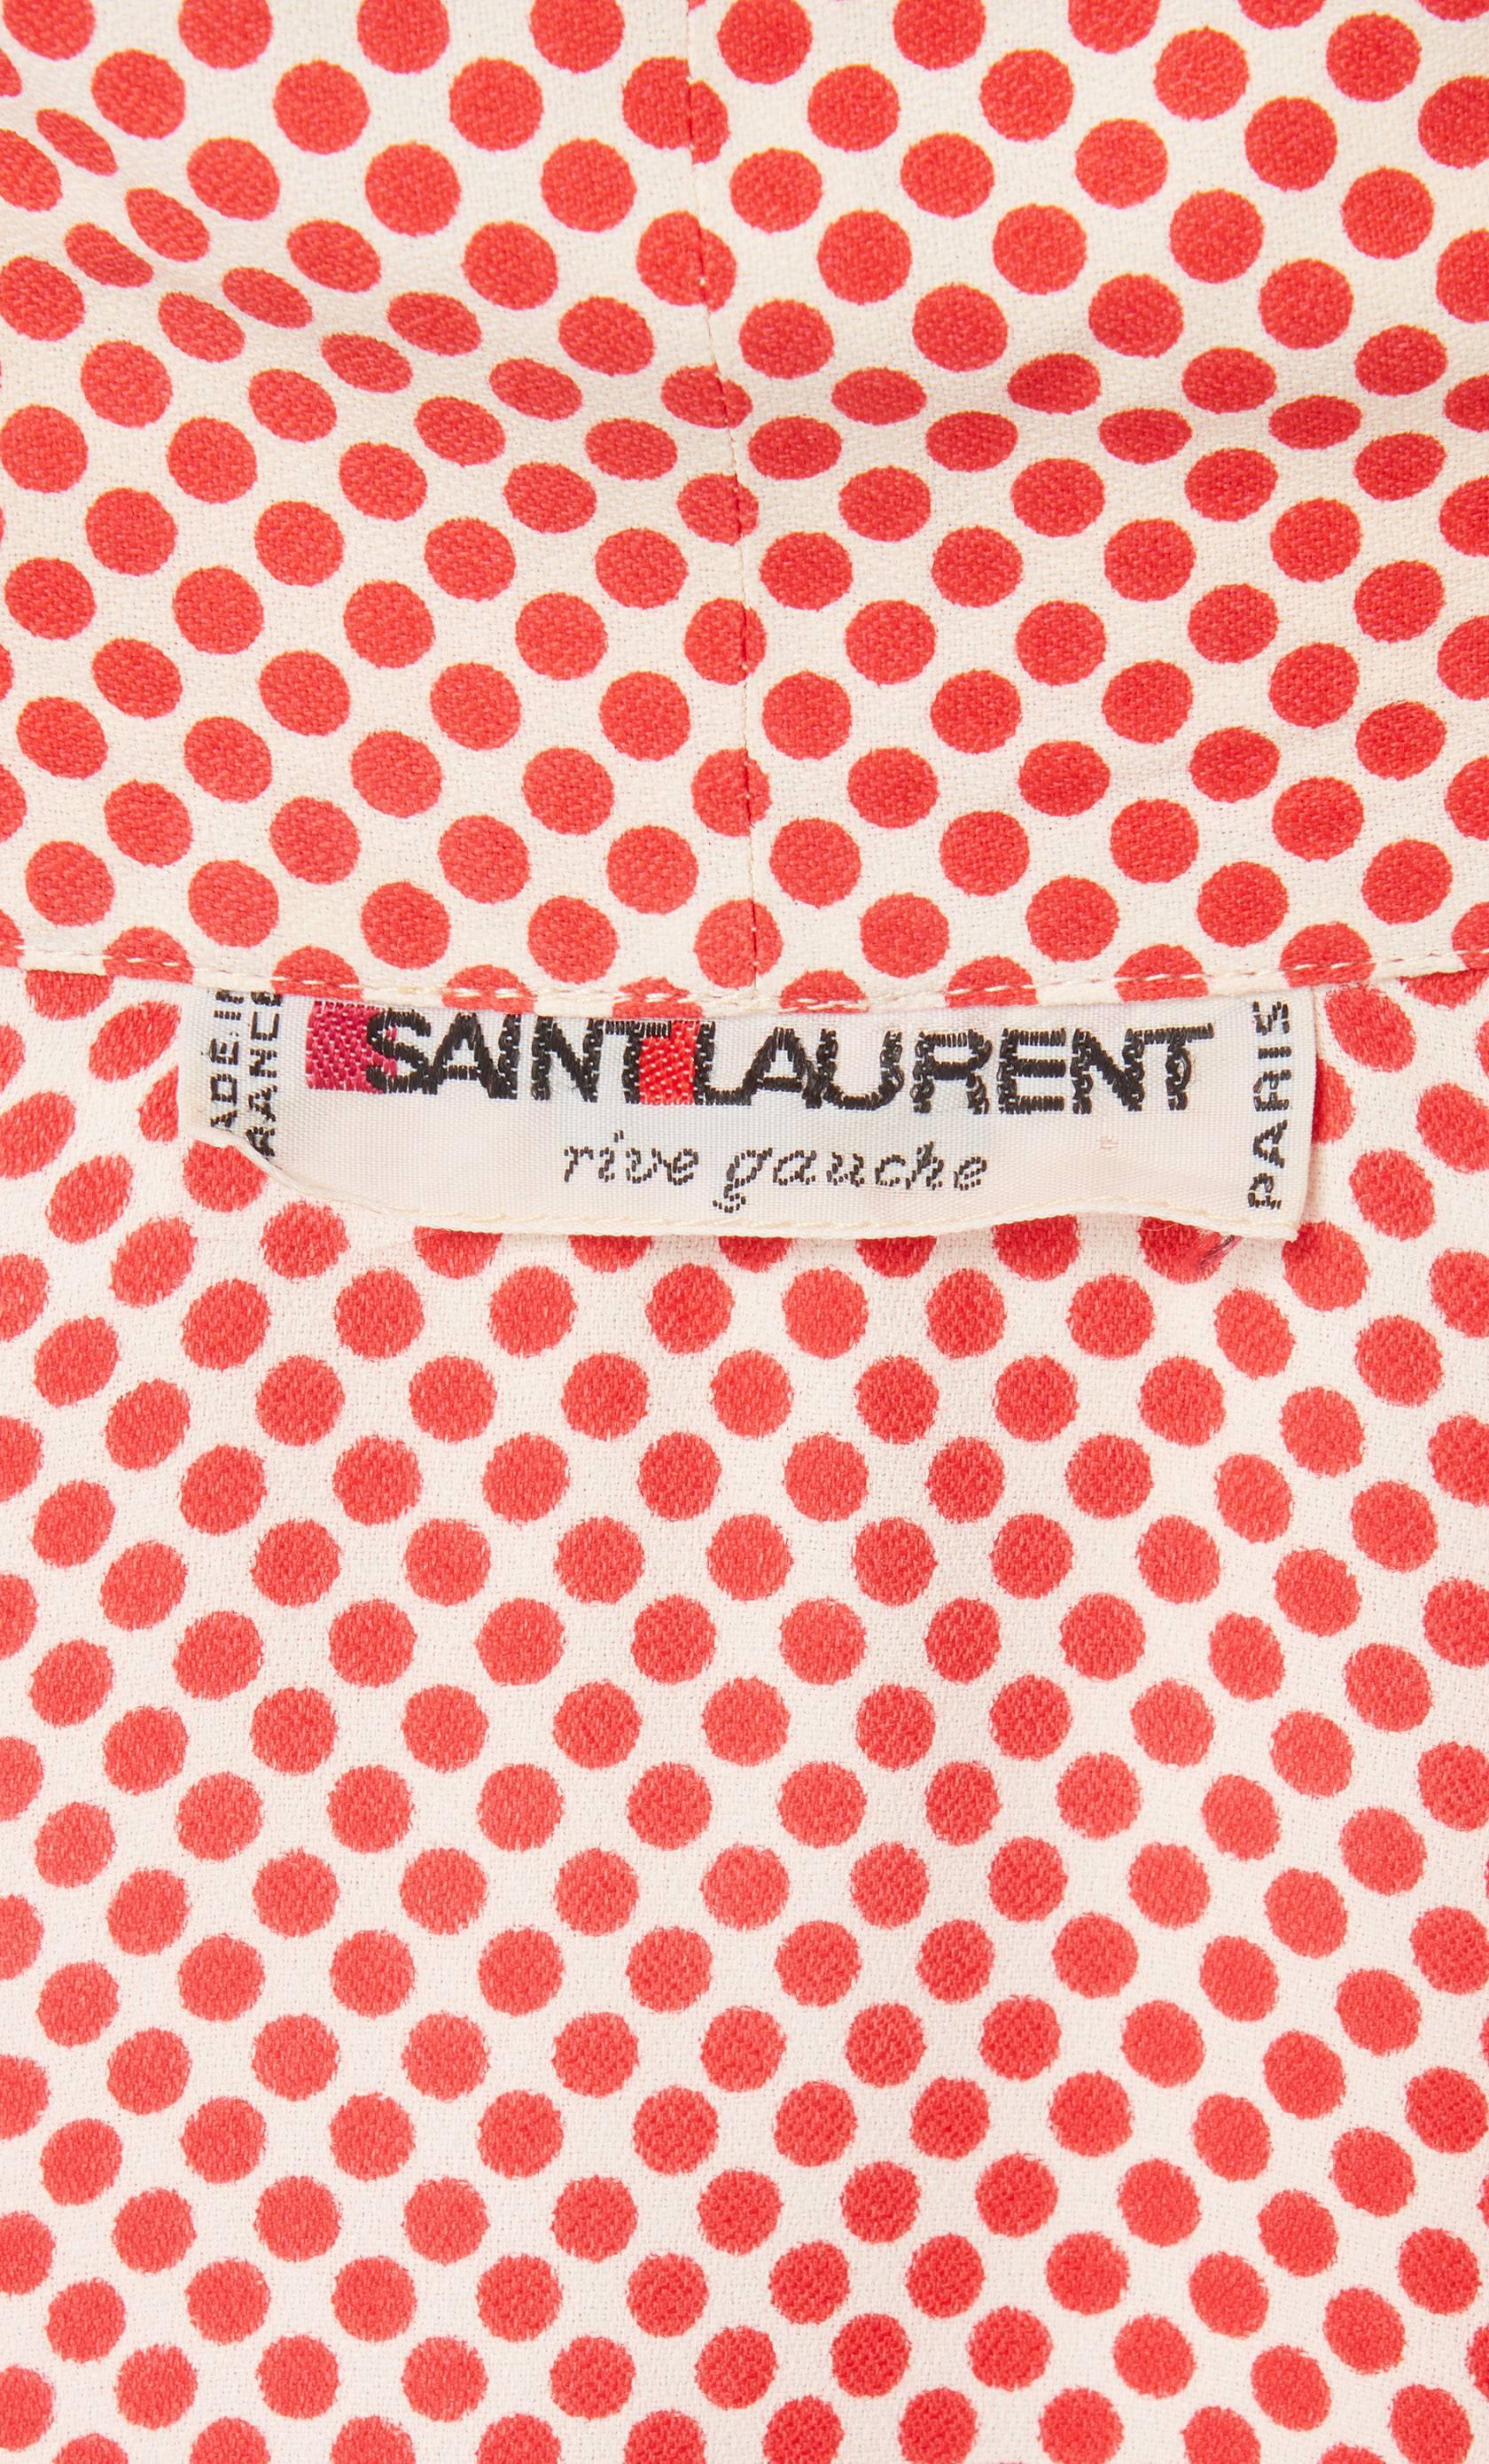 Women's Yves Saint Laurent Red polka dot dress, circa 1971